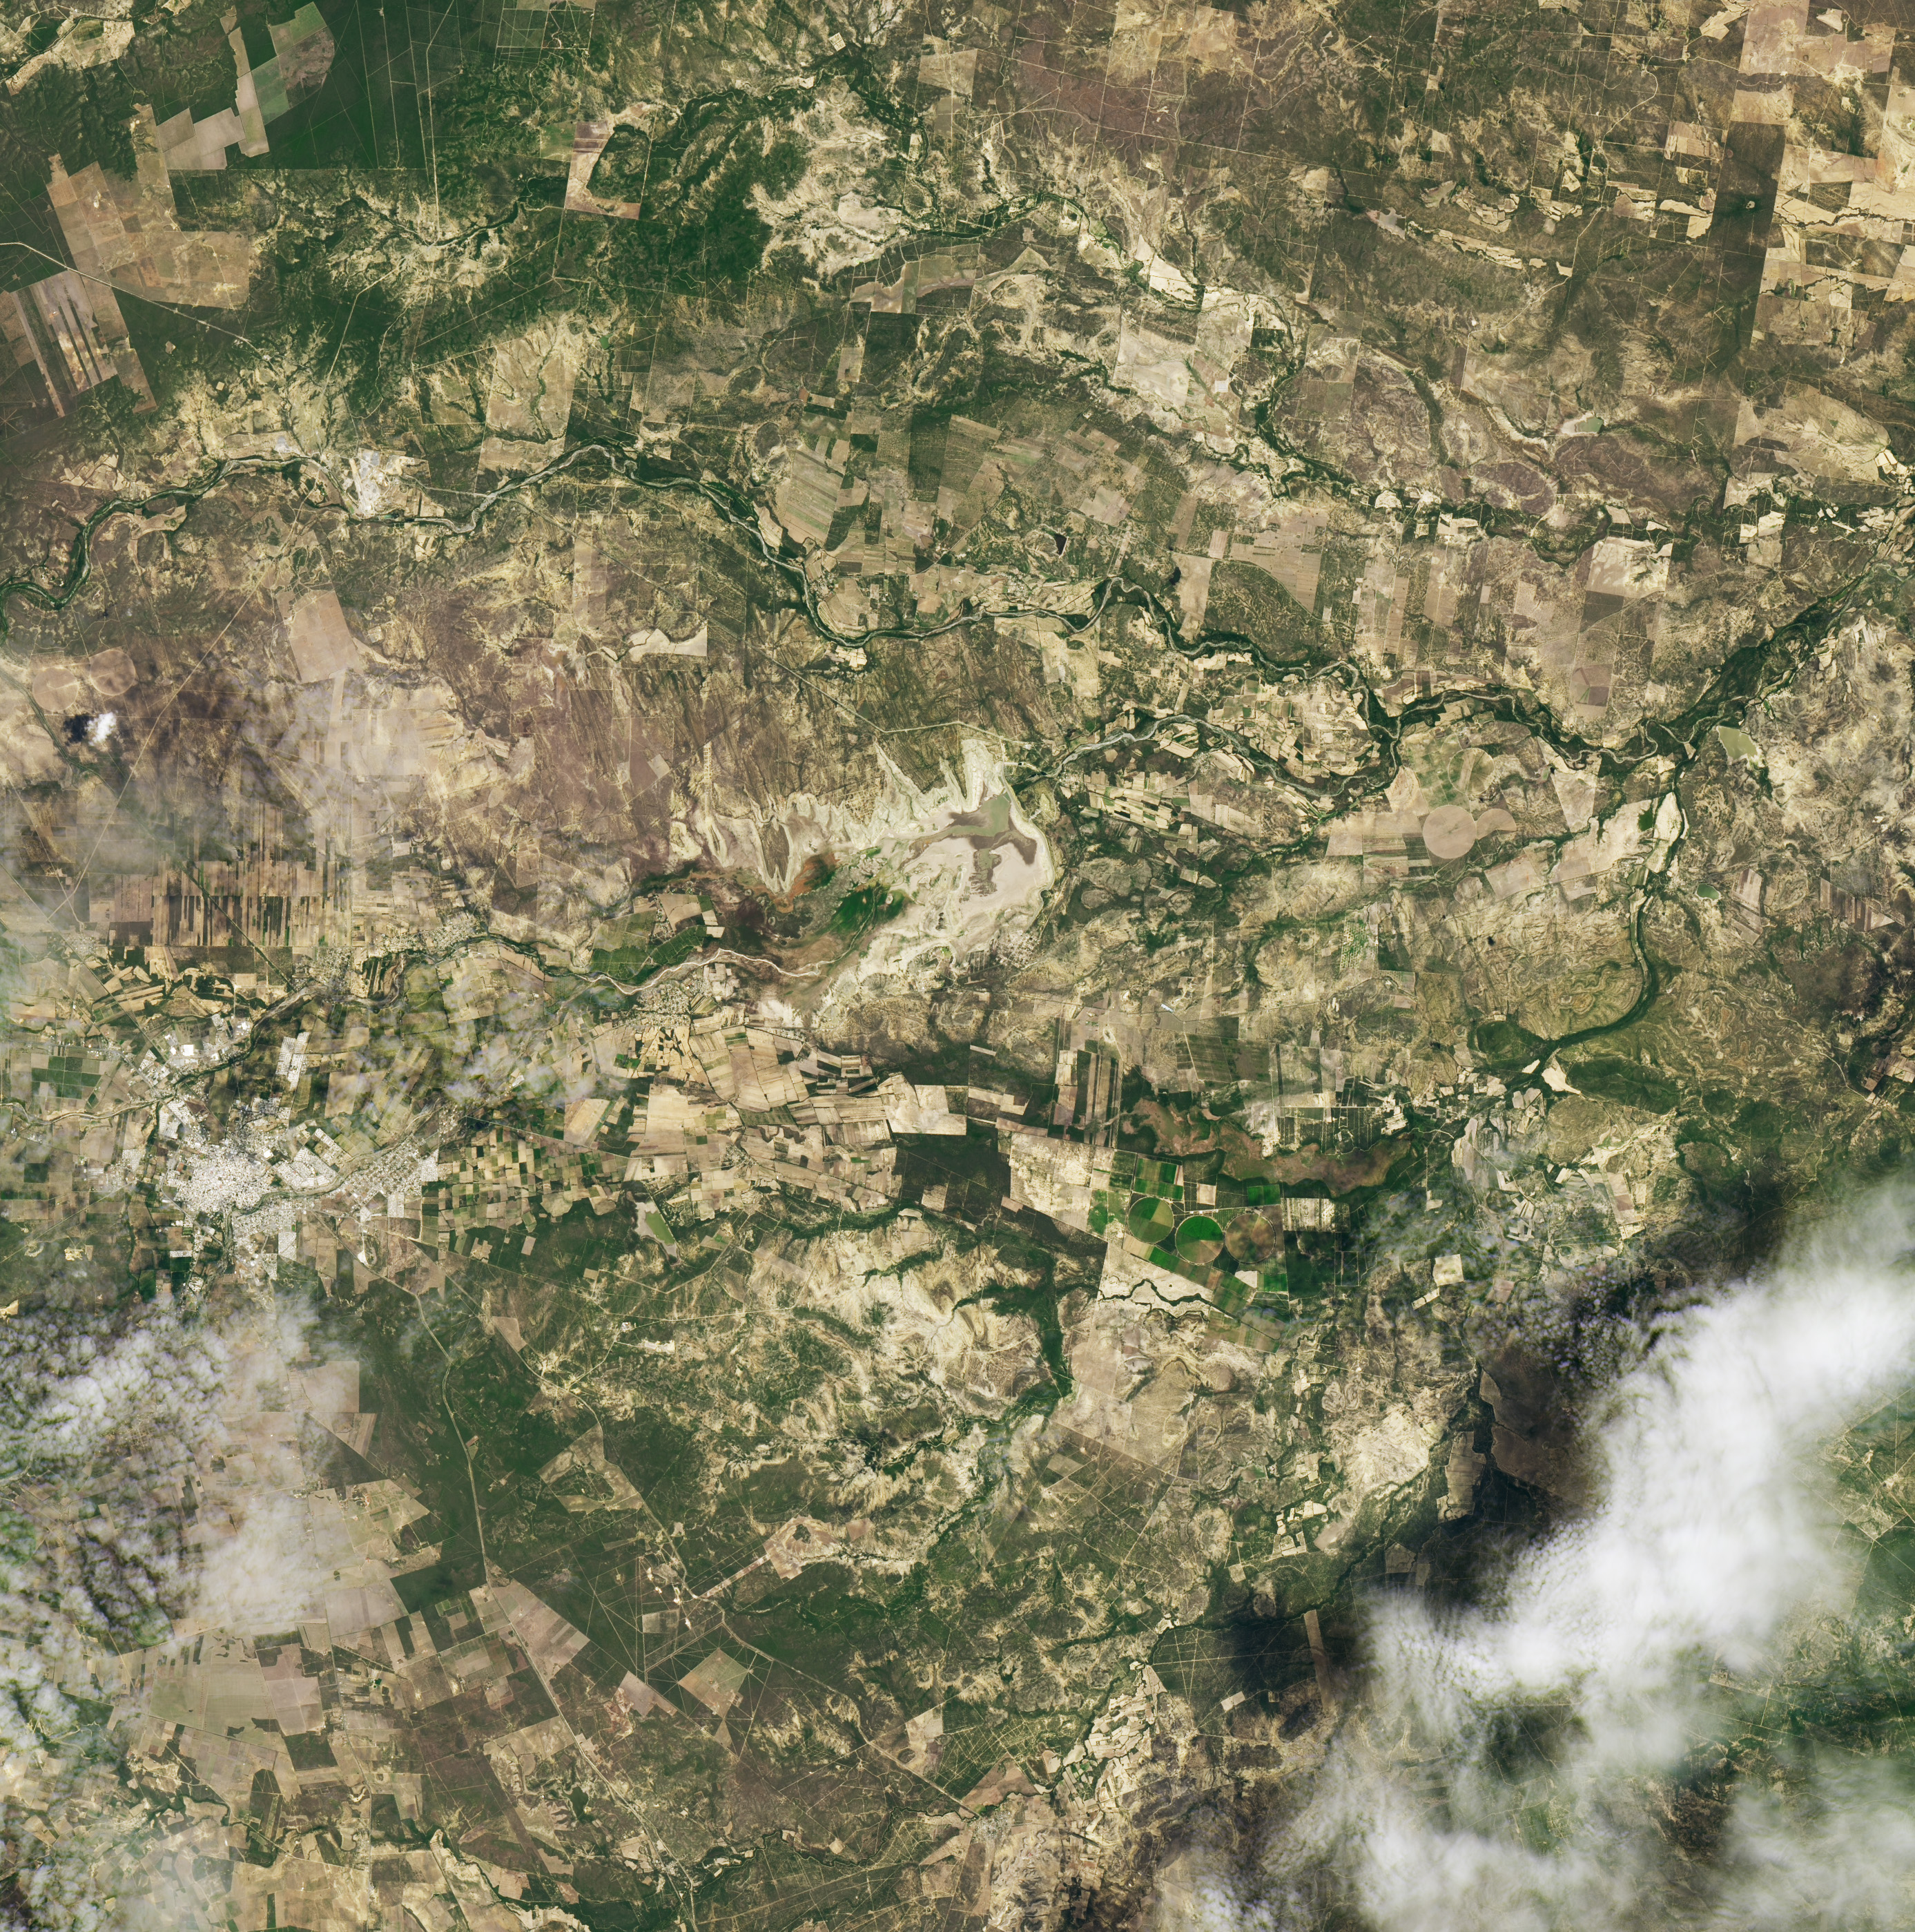 Zdjęcia wykonane przez Landsat 8 skłaniają do refleksji. W ciągu 7 lat zbiornik wodny zamienił się w pustynię